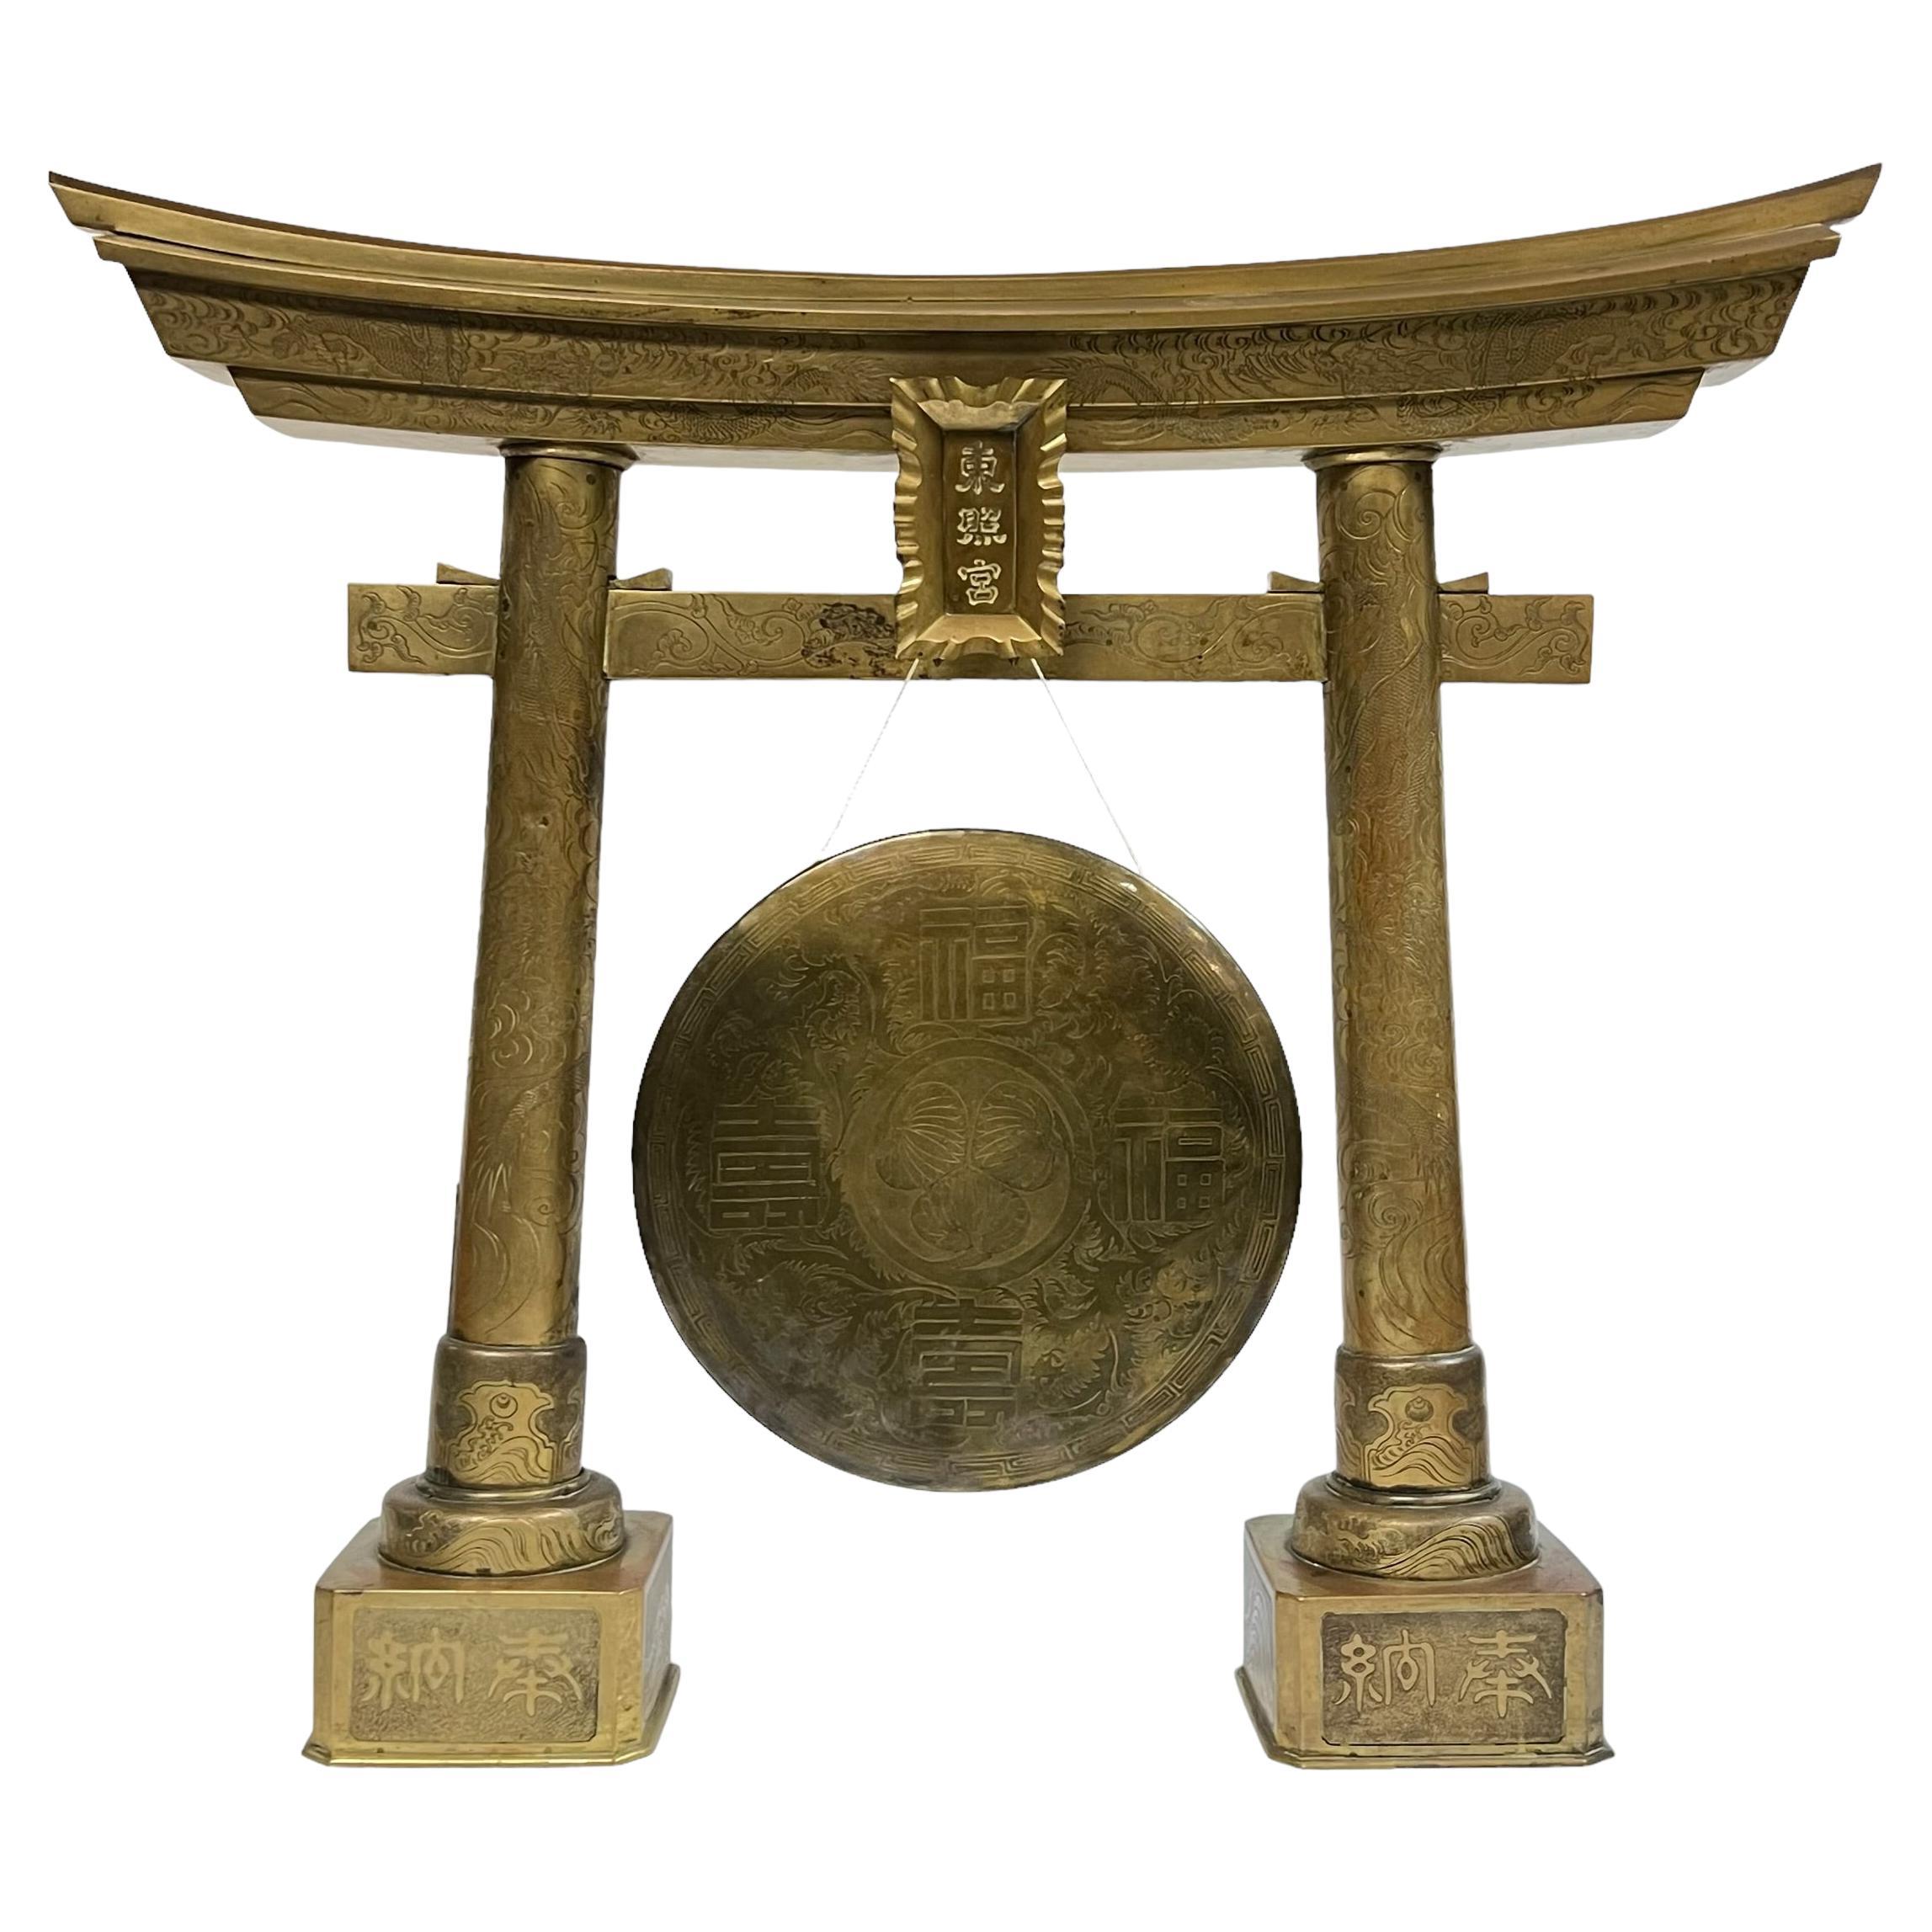 Gong japonaise du 19ème siècle d'époque Edo